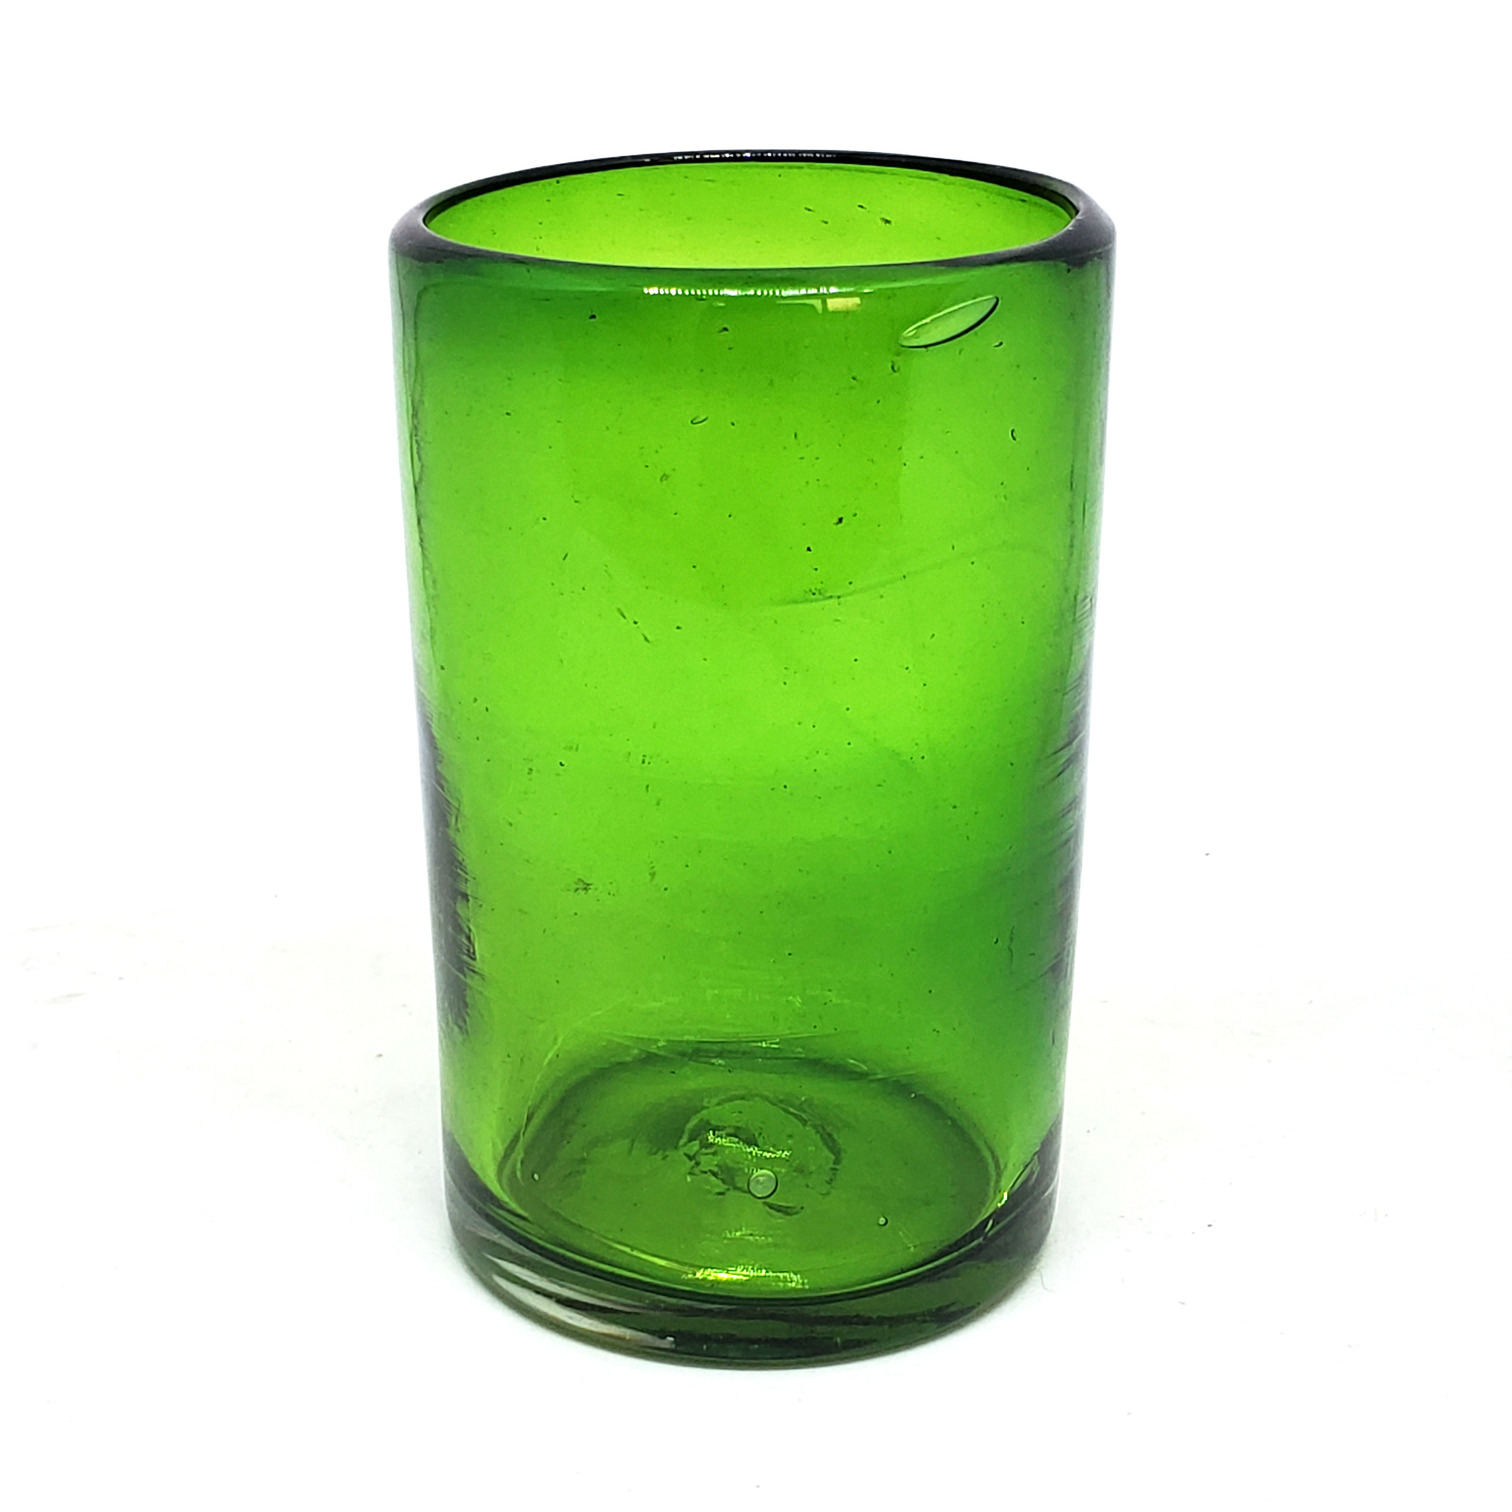 Ofertas / vasos grandes color verde esmeralda / �stos artesanales vasos le dar�n un toque cl�sico a su bebida favorita.